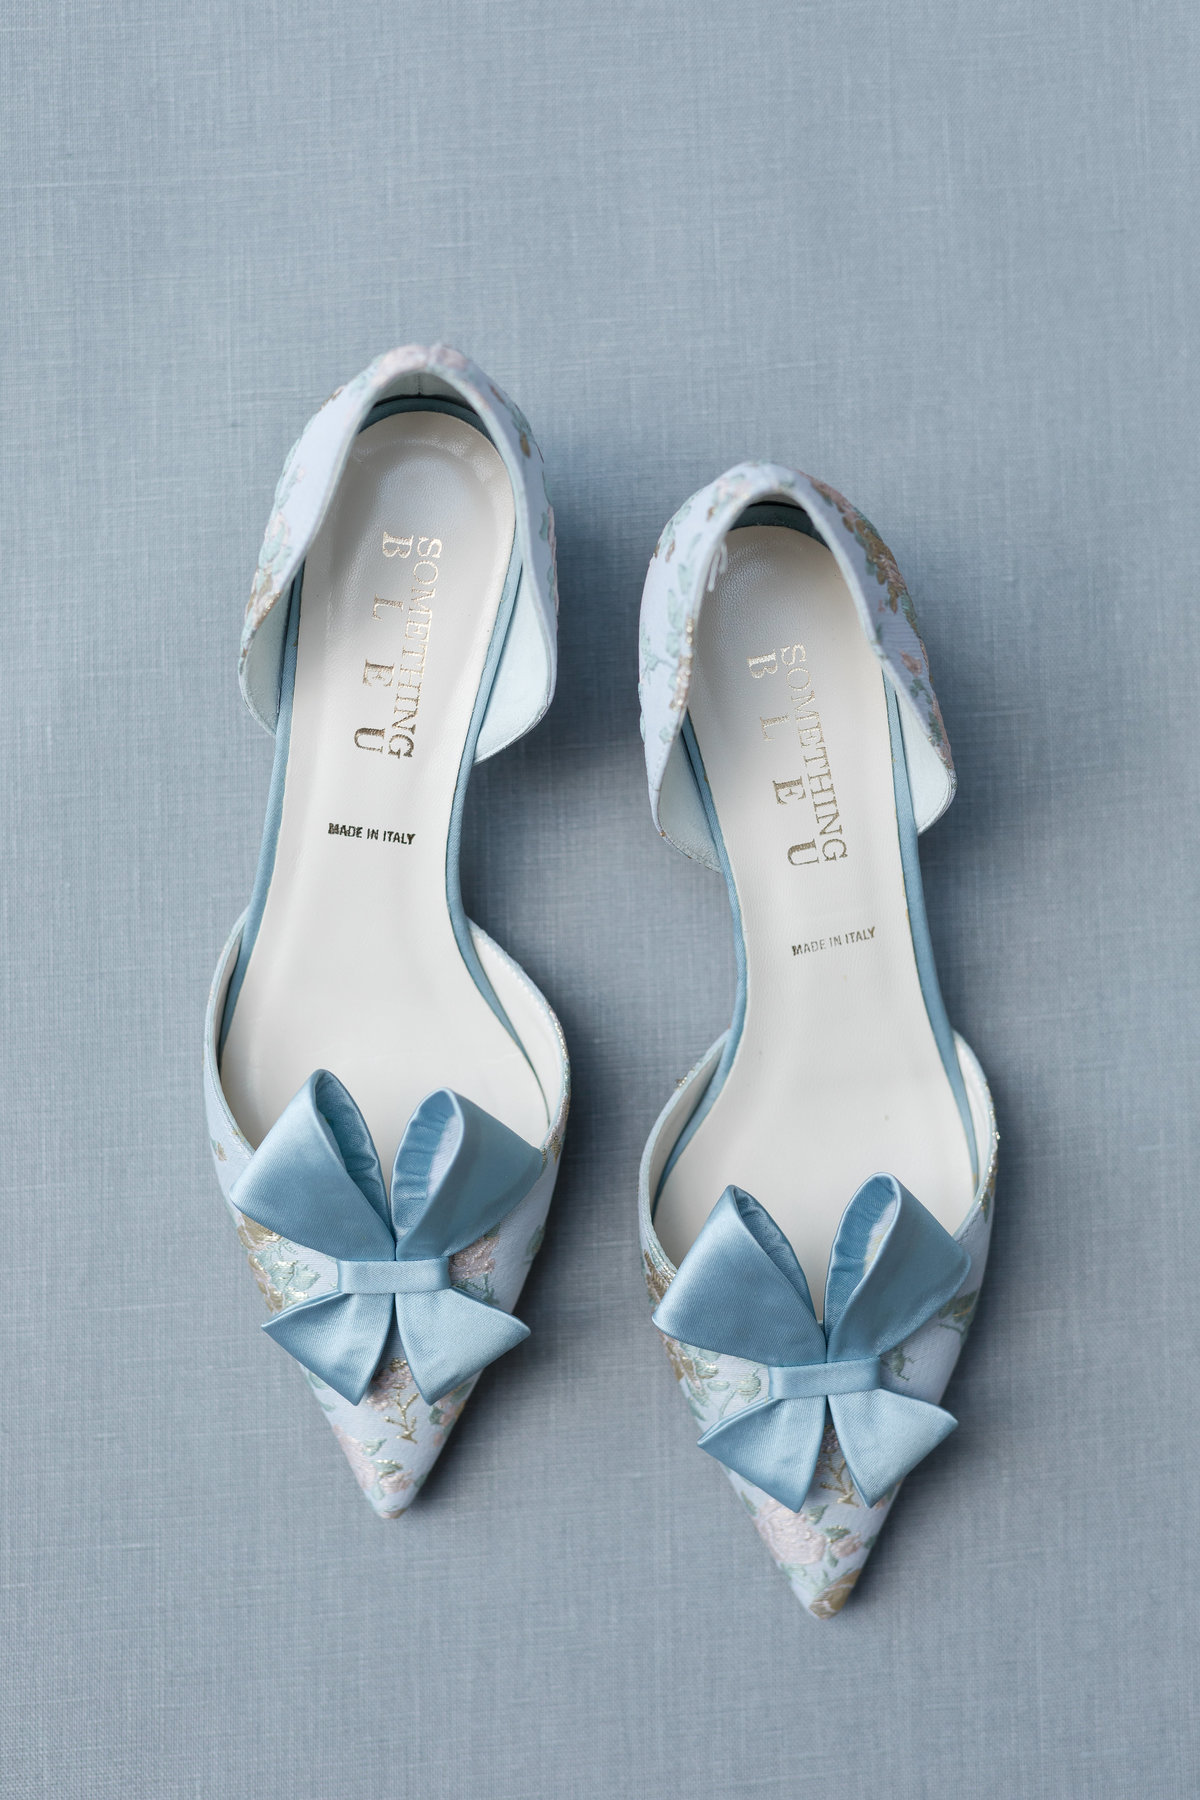 Something Bleu Bride Heels